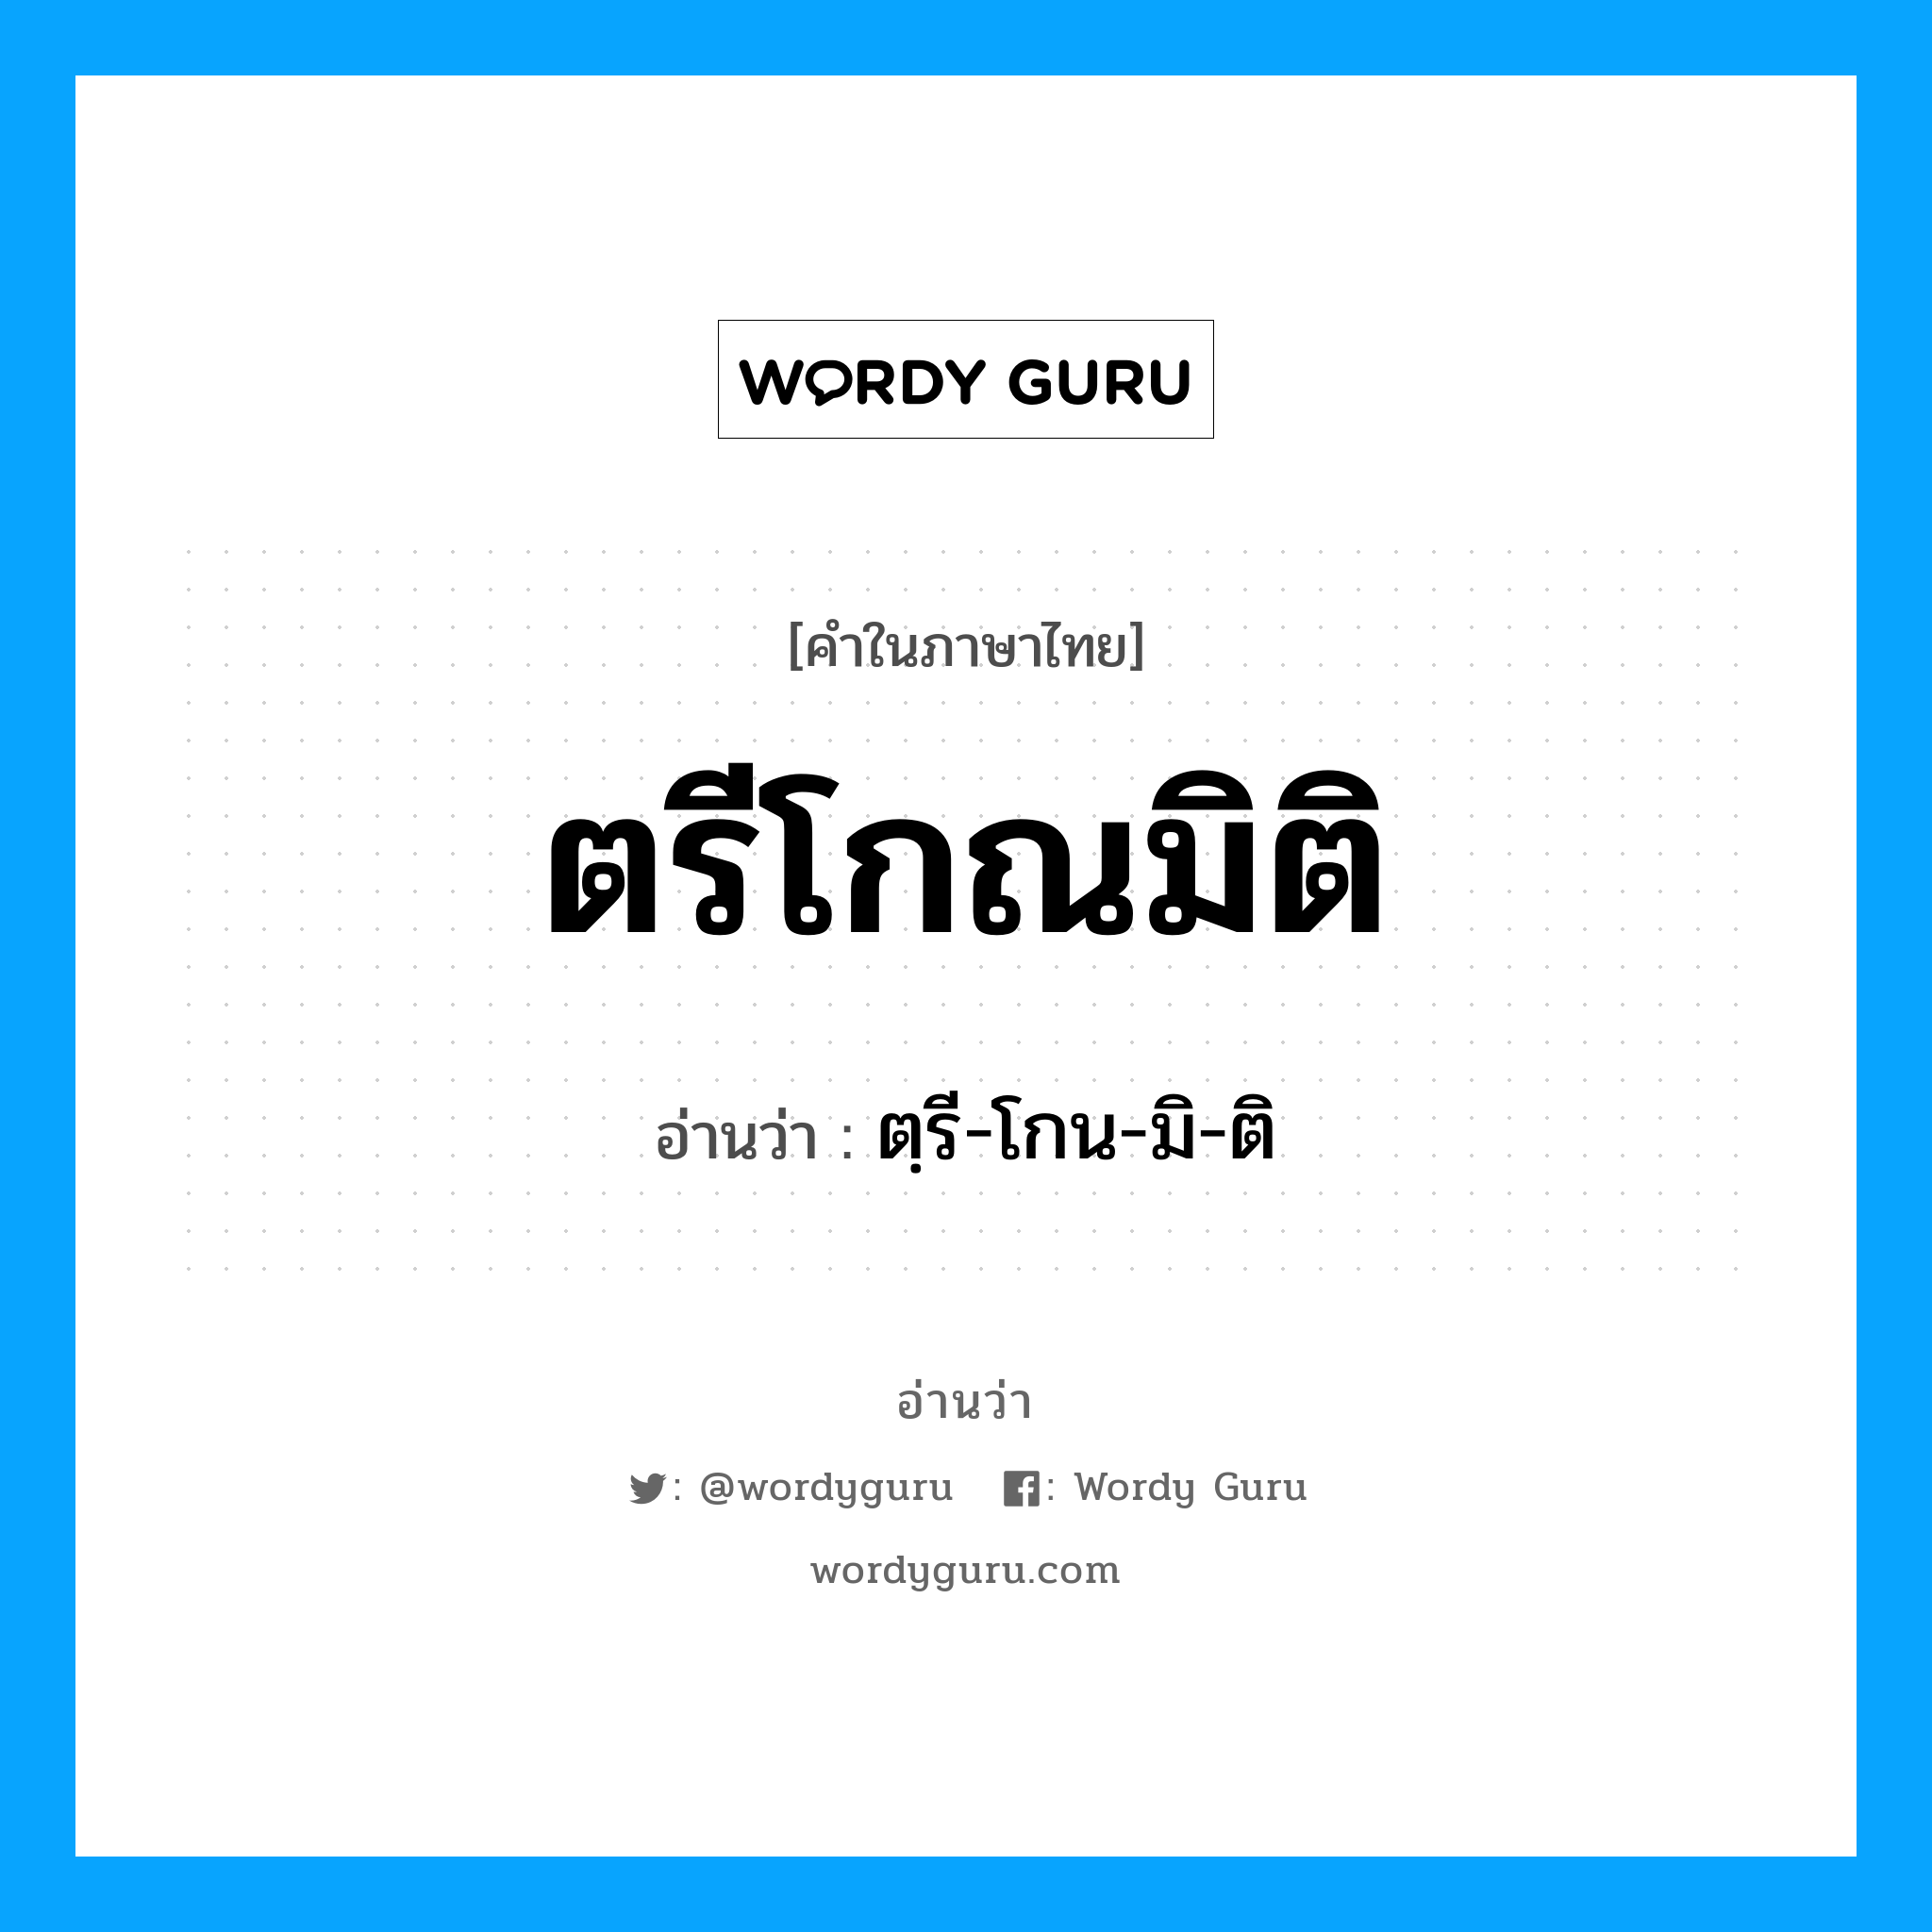 ตรี-โกน-มิ-ติ เป็นคำอ่านของคำไหน?, คำในภาษาไทย ตฺรี-โกน-มิ-ติ อ่านว่า ตรีโกณมิติ